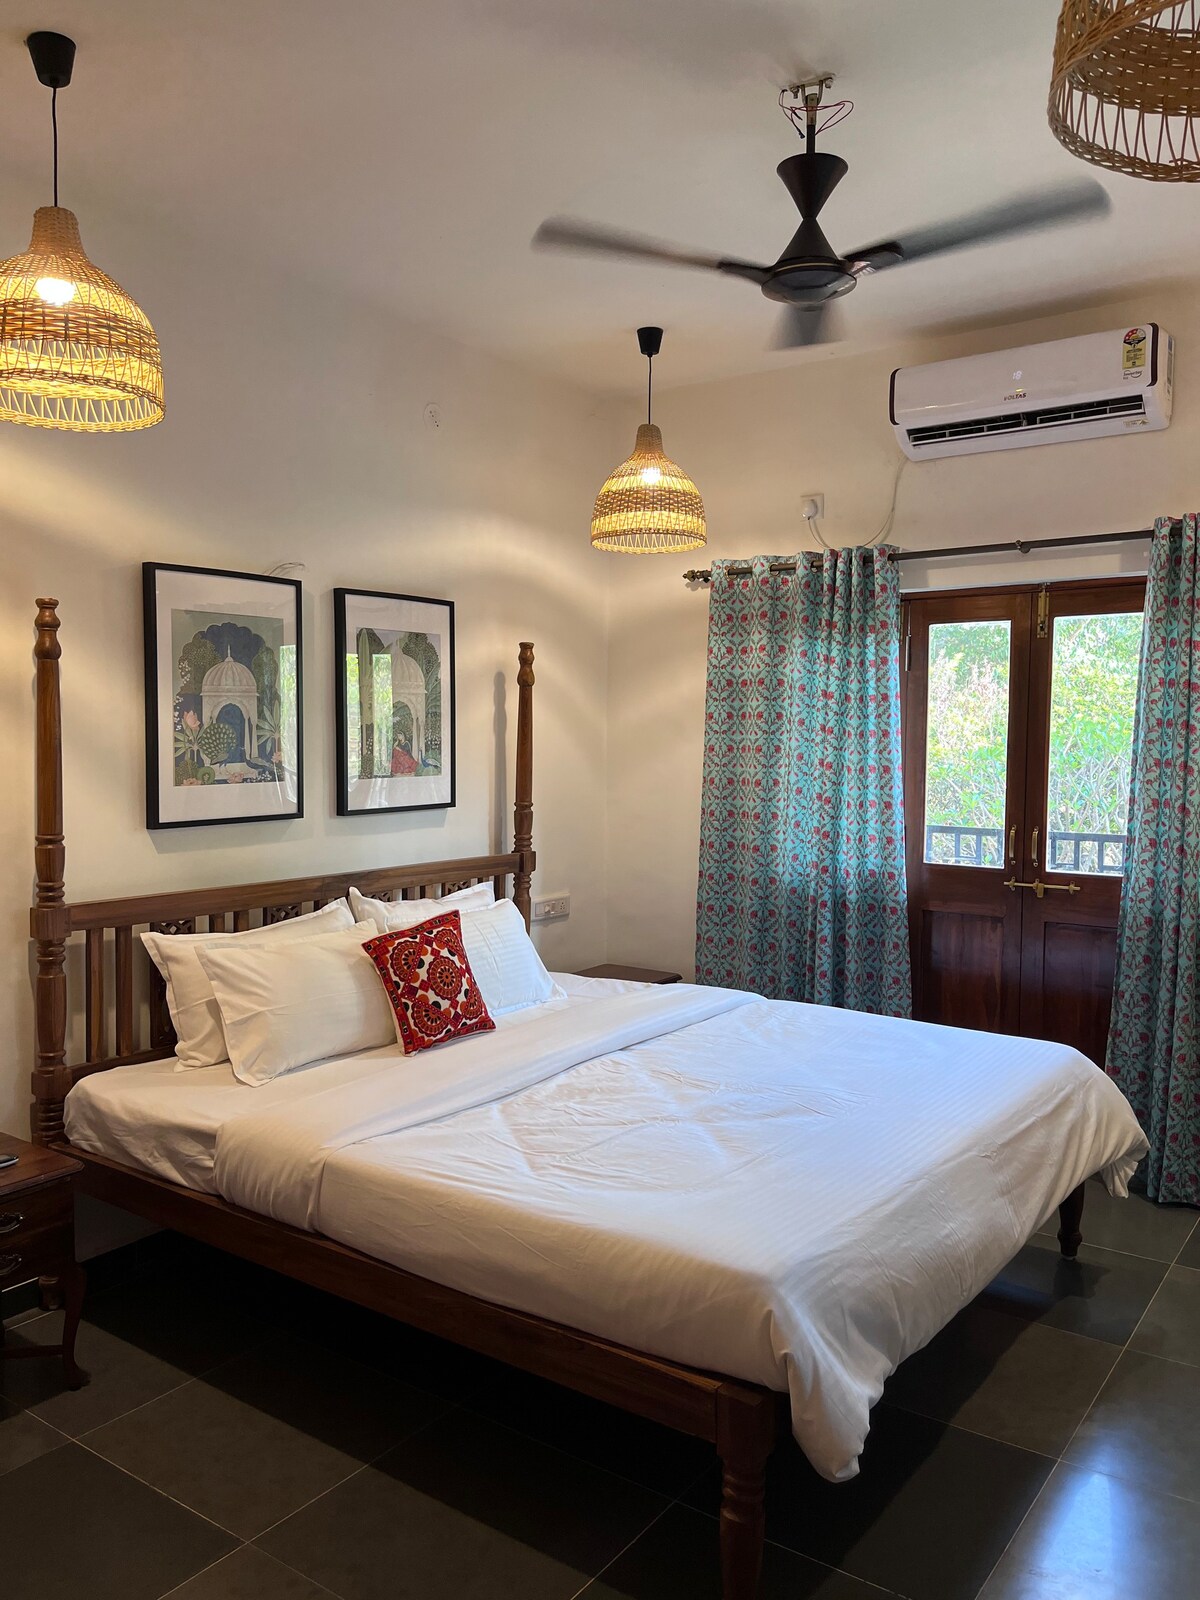 Waddo susegaad, 
4Bhk Goan Luxury Stay in Karjat